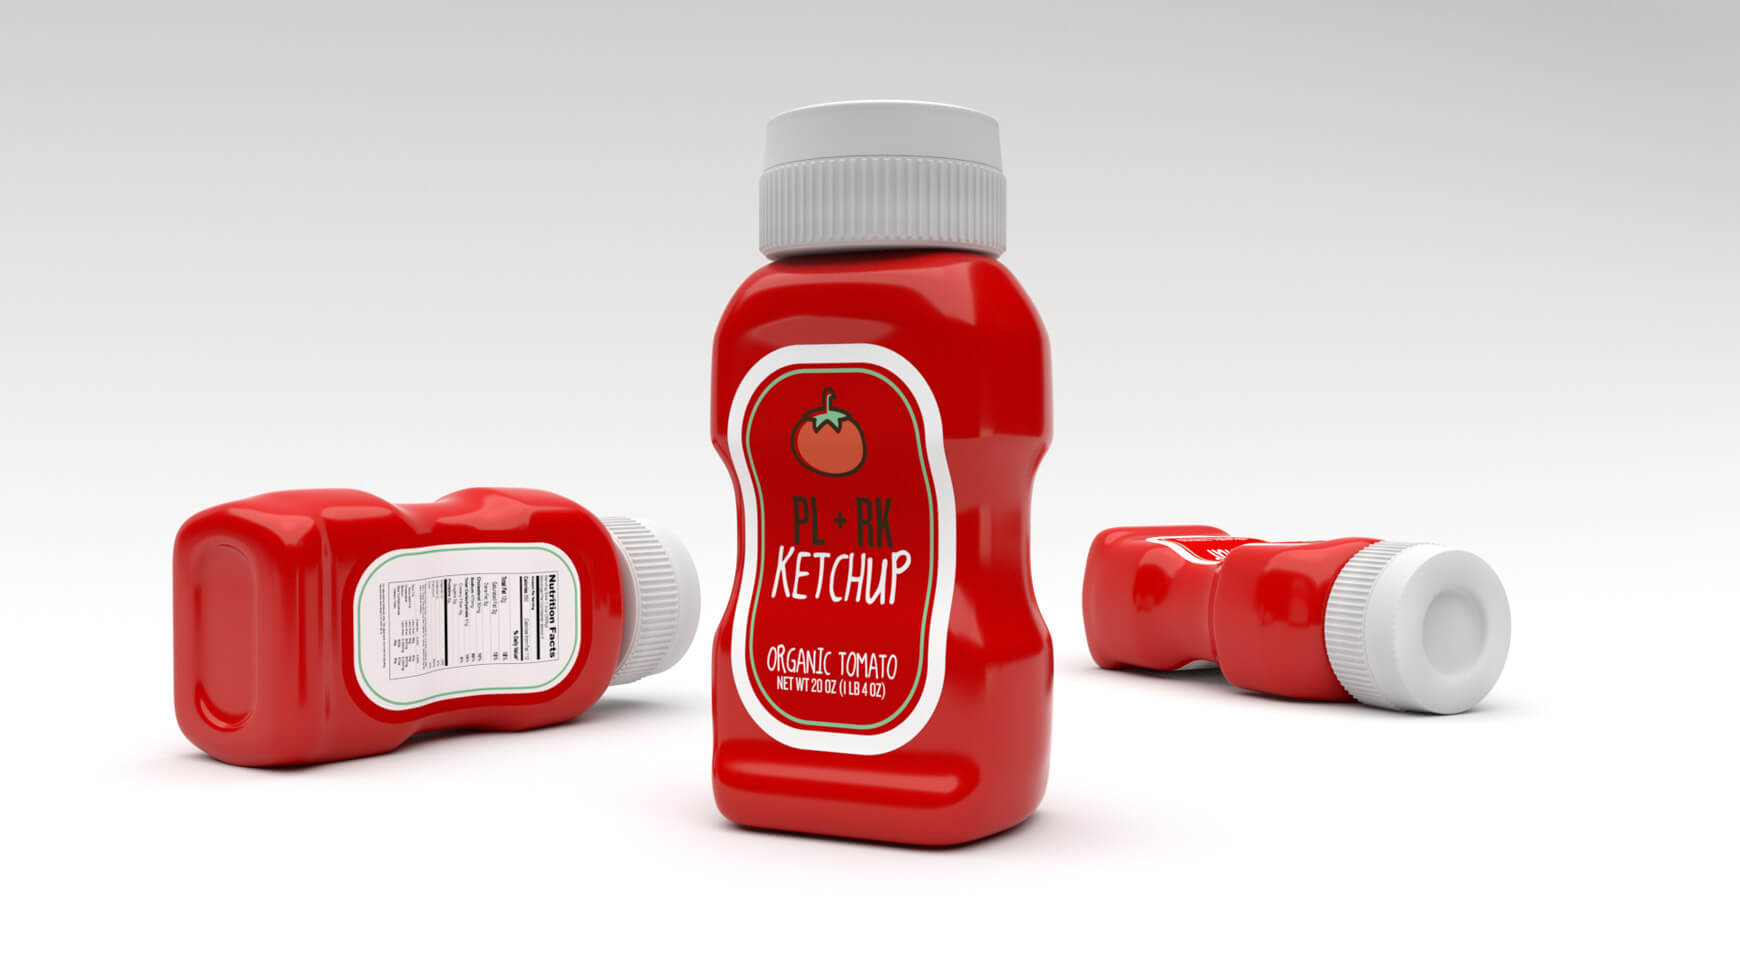 Free Cinema 4D 3D Model Ketchup Bottle